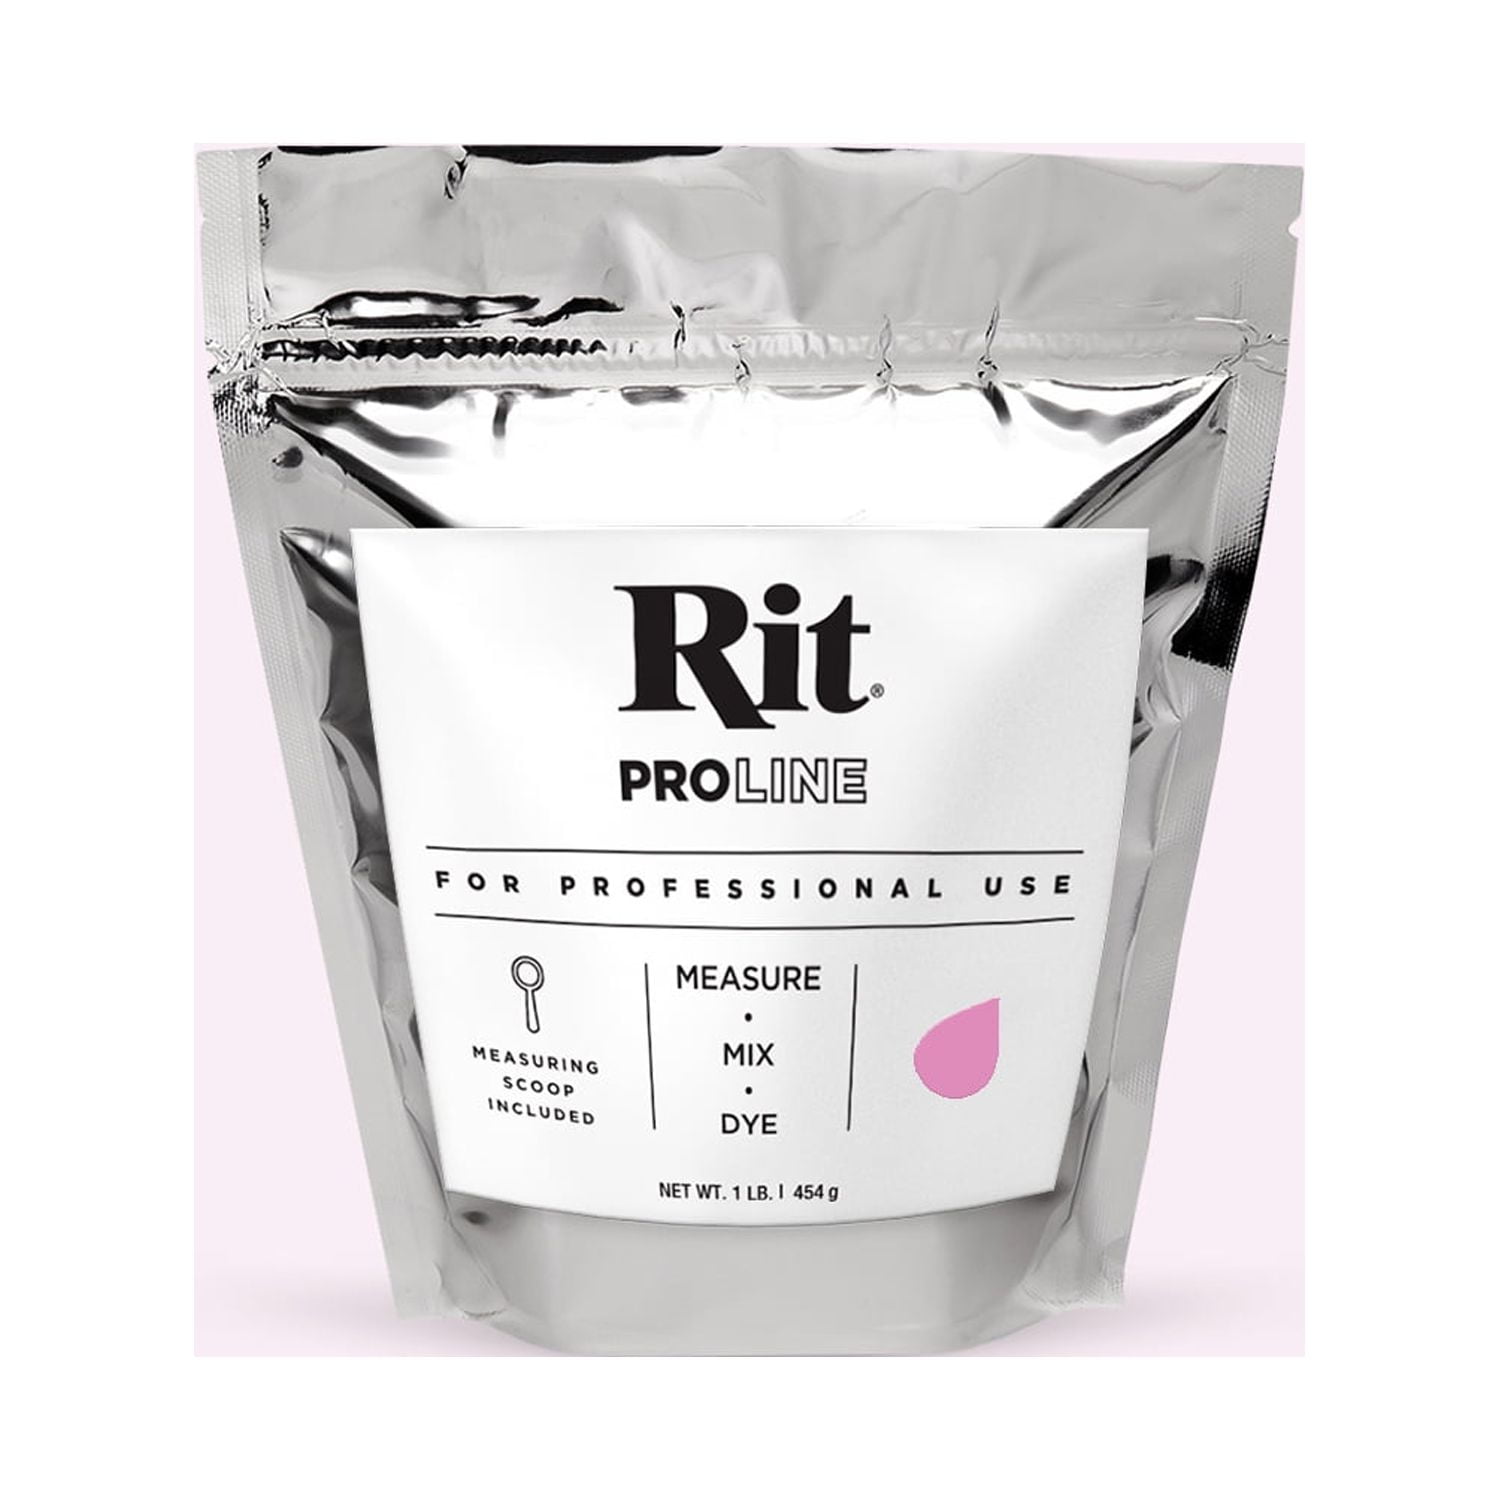 Rit Proline Dye Powder 1lb Bag-Royal Blue